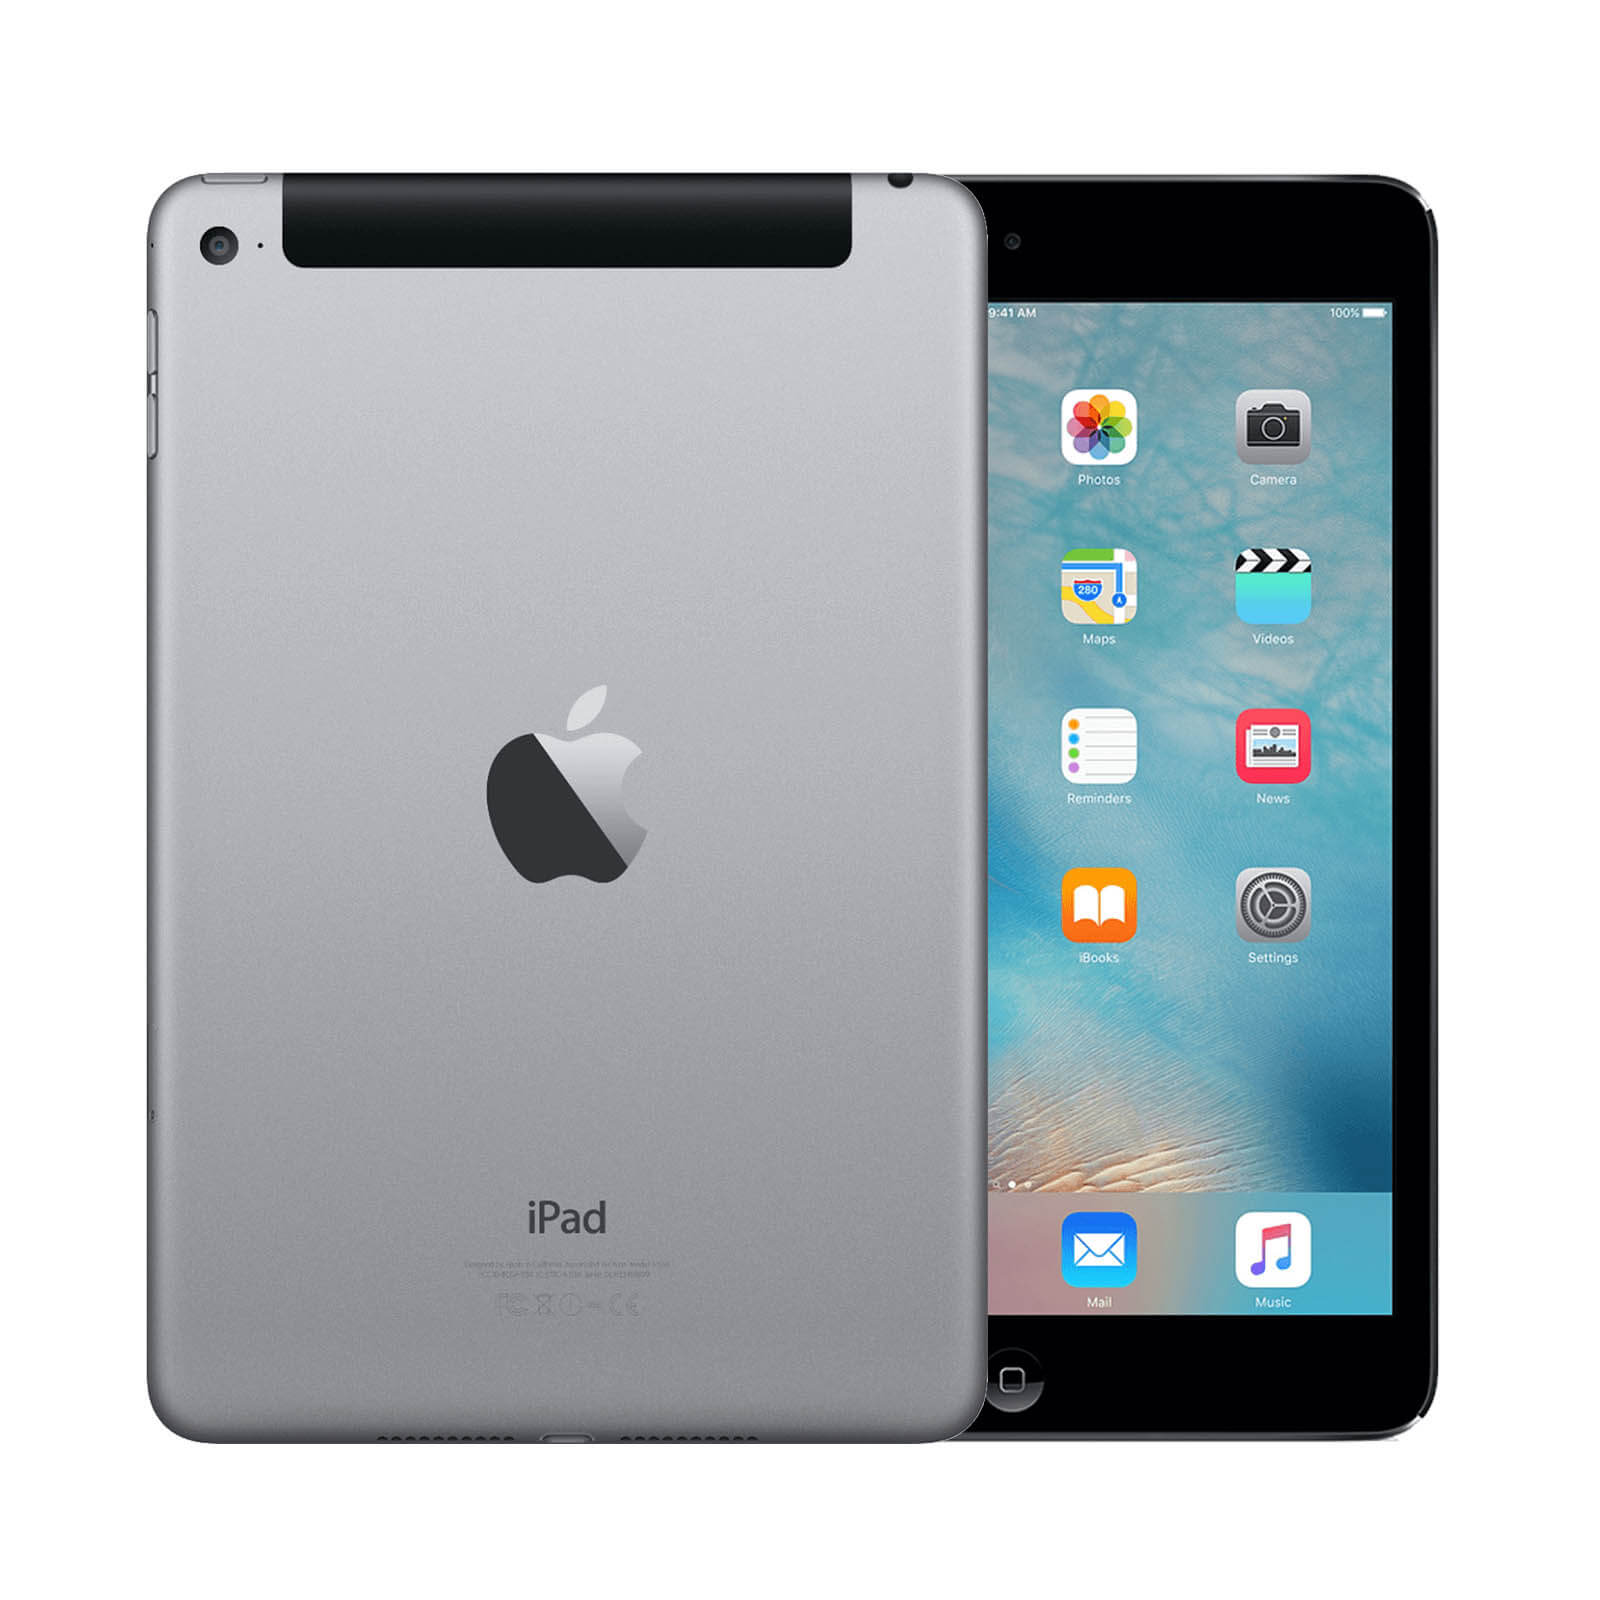 Apple iPad Mini 4 64GB Space Grey WiFi & Cellular - Good 64GB Space Grey Good